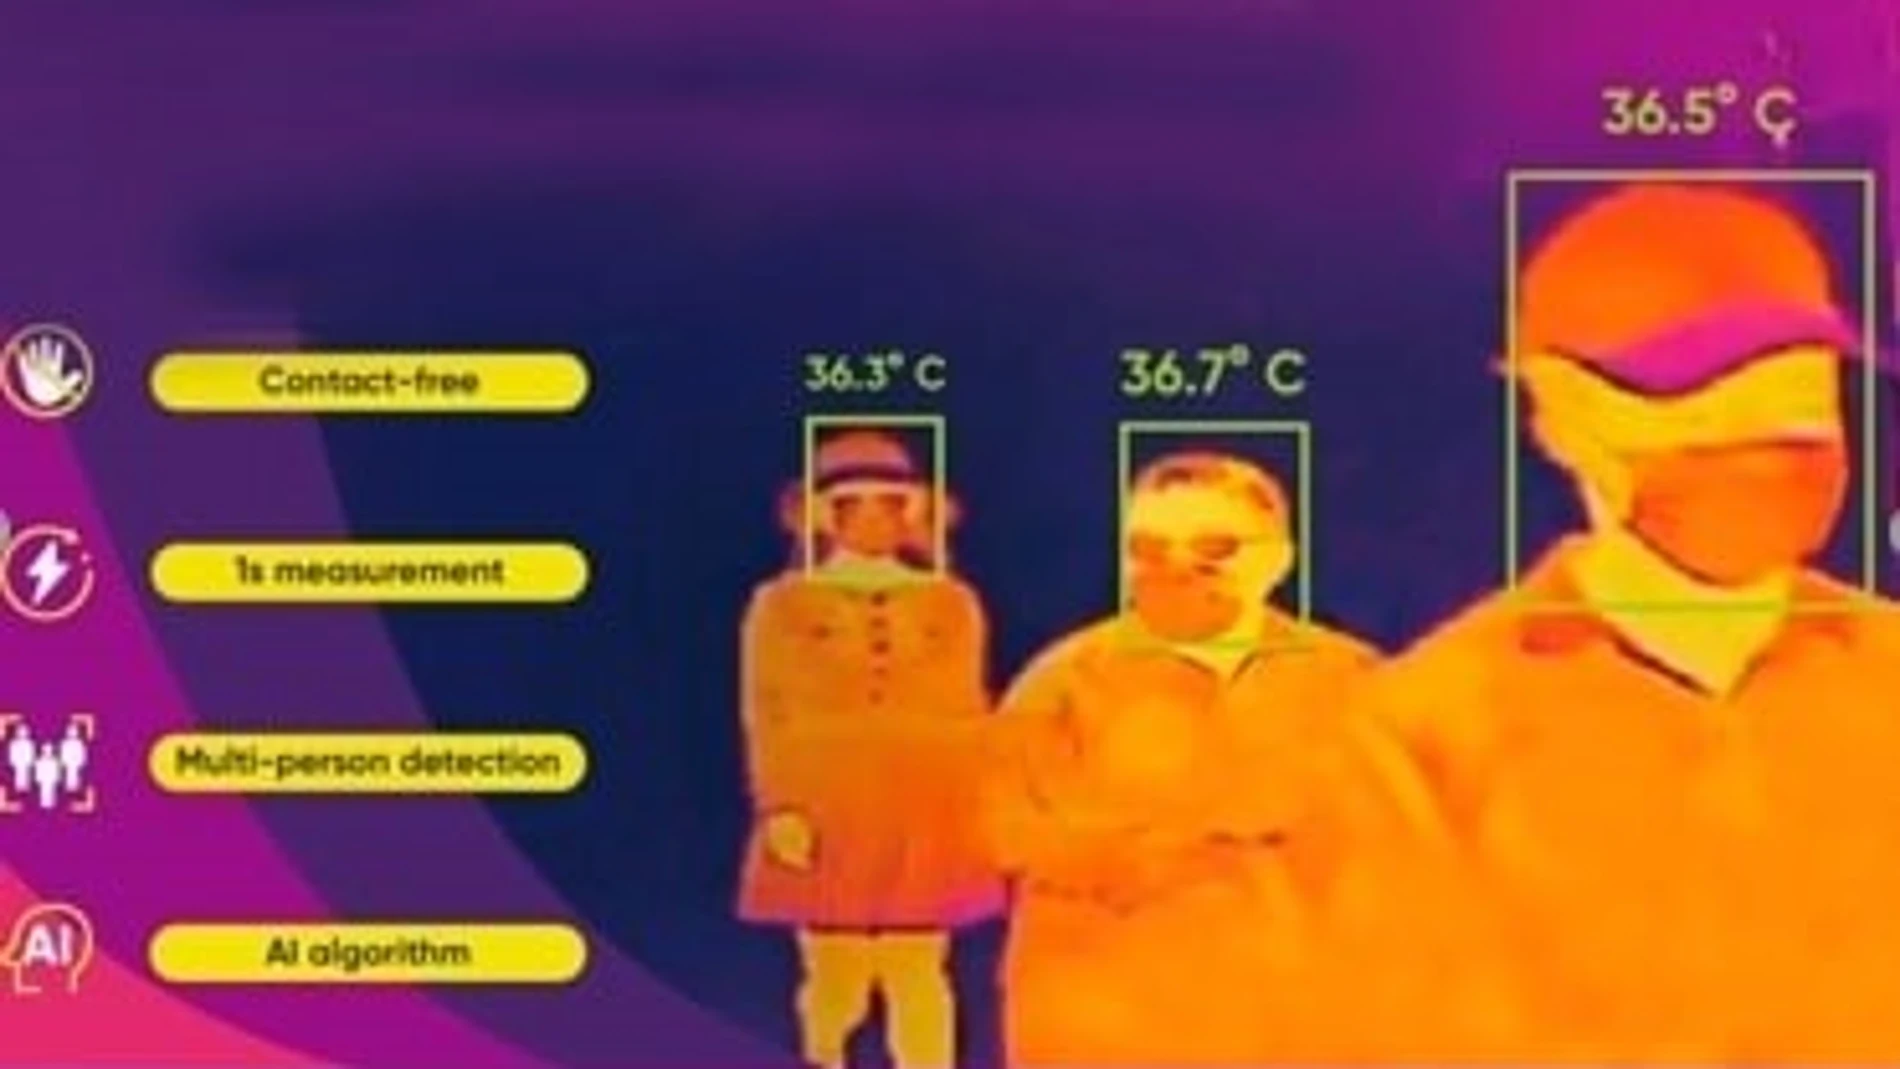 Cámaras termográficas, la apuesta de empresas y espacios públicos para medir la temperatura sin contacto físico